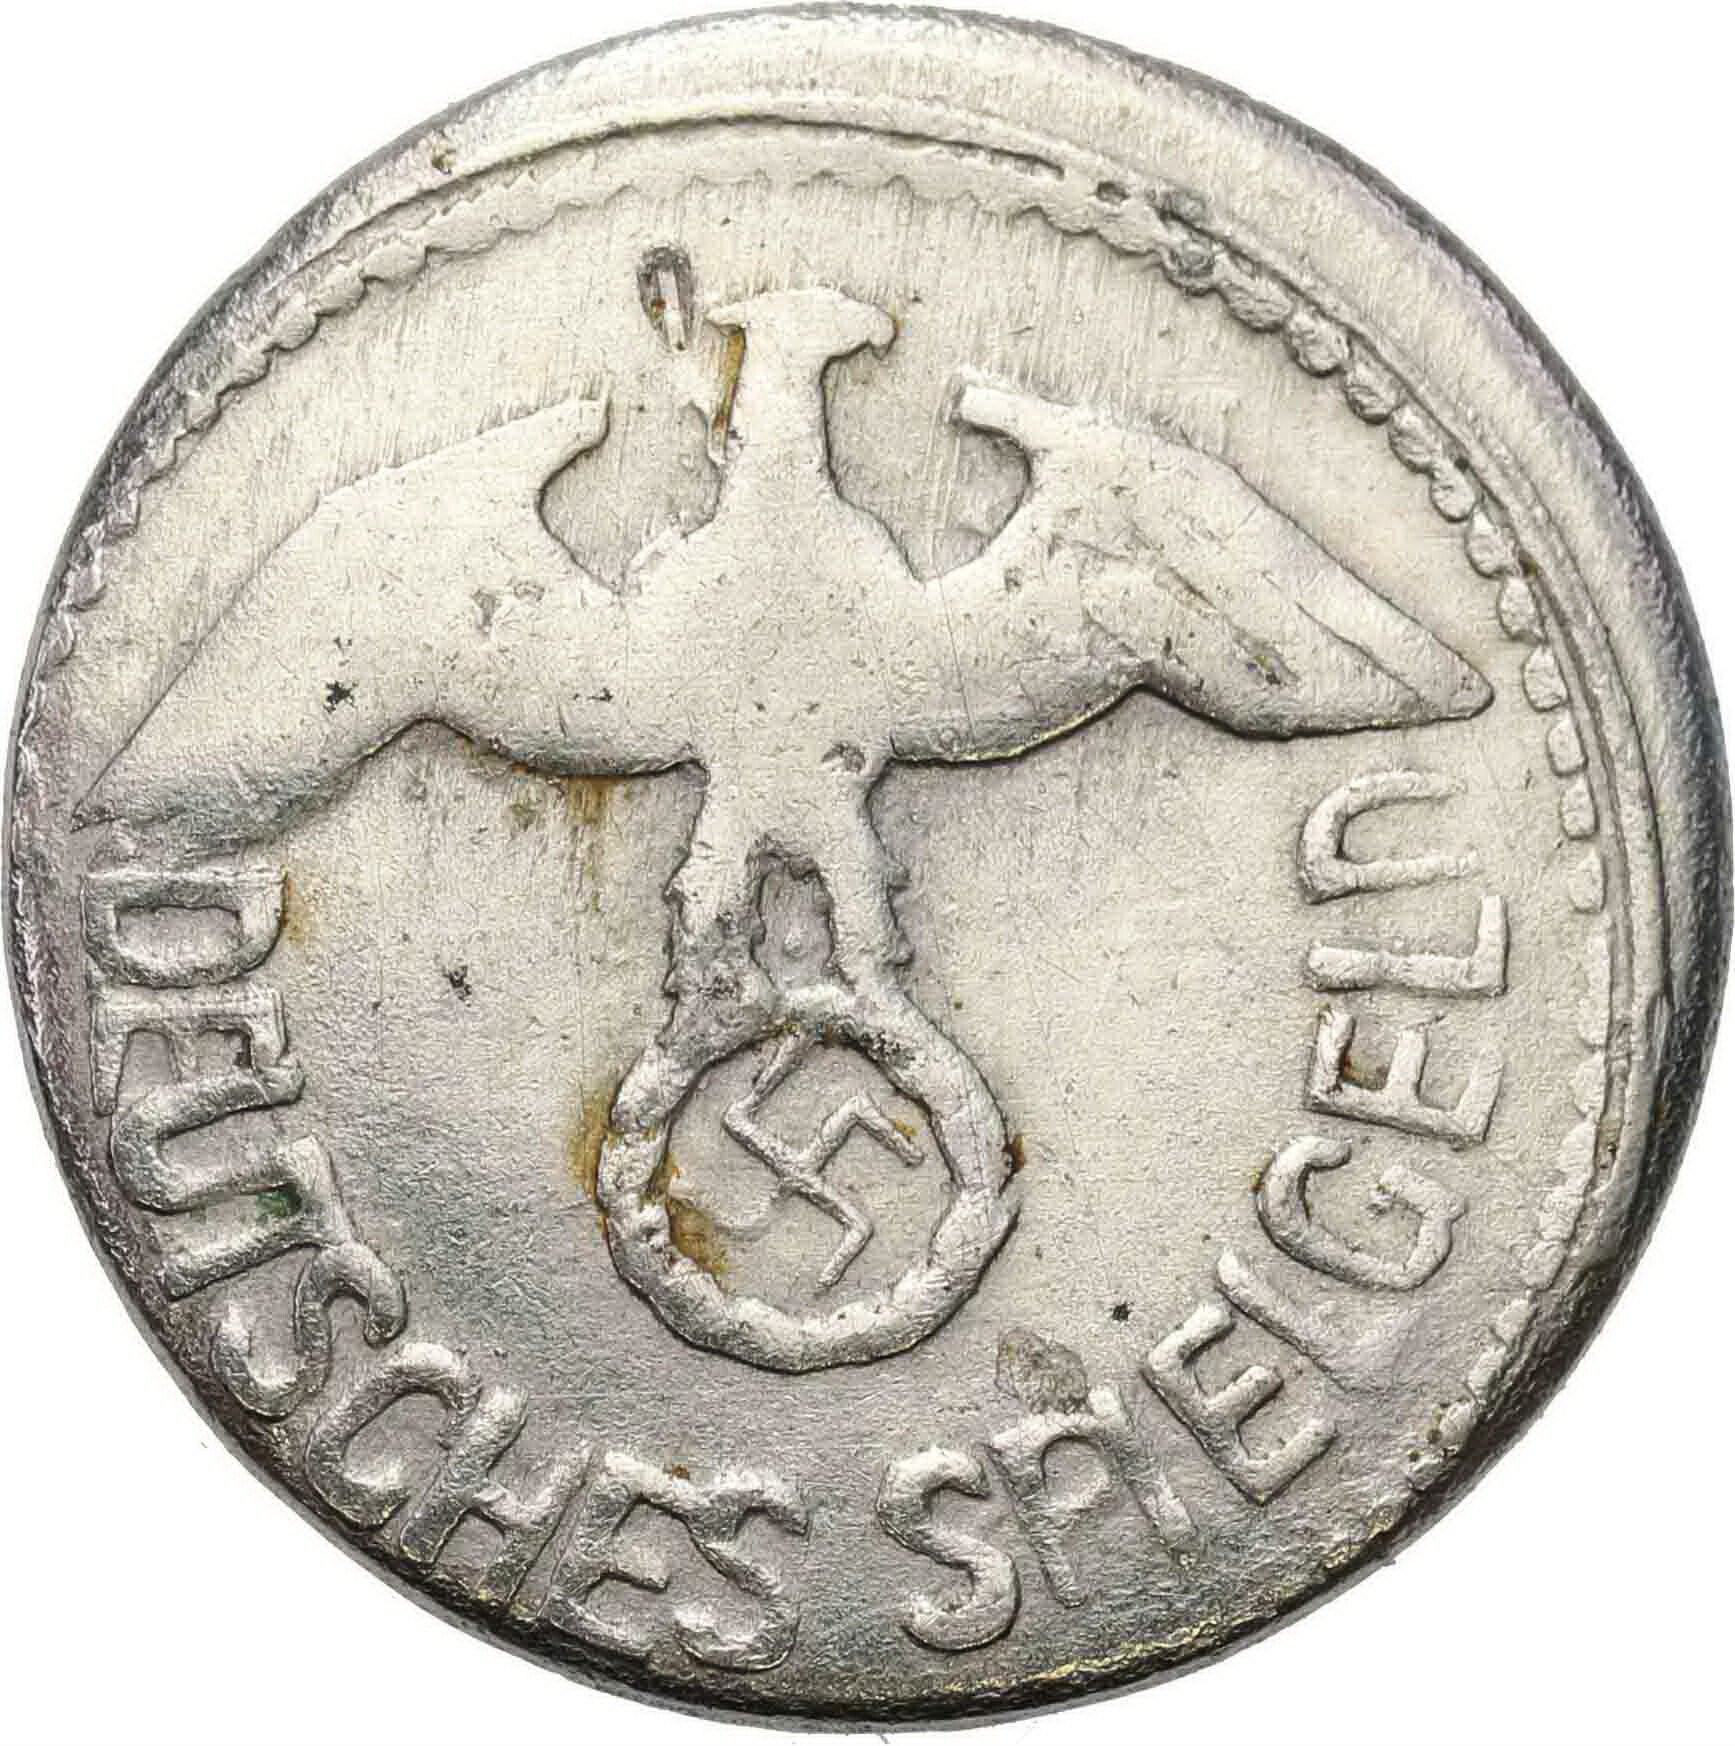 Niemcy, III Rzesza. Pieniądz zastępczy - 50 fenigów Deutsches Spielgeld